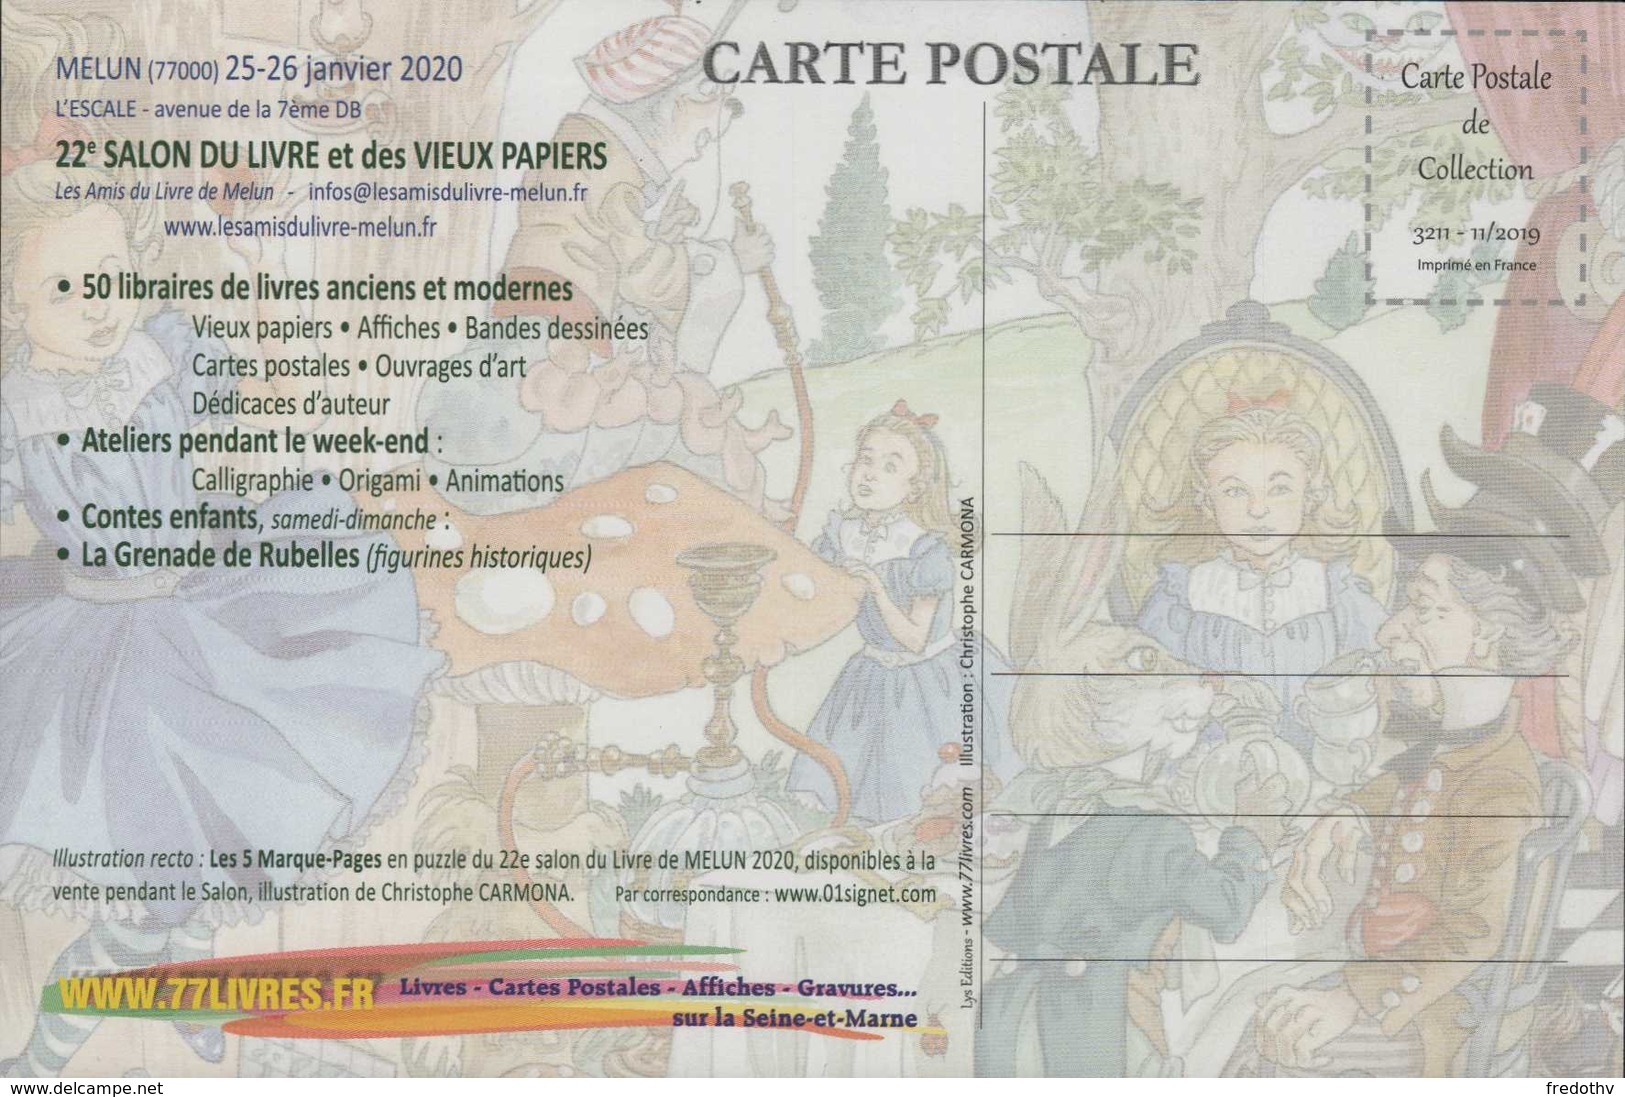 Carte Postale 22 Salon Du Livre Et Des Vieux Papiers Melun 2020 ILLUSTRATEUR CARMONA ALICE AU PAYS DES MERVEILLES - Cartoline Postali